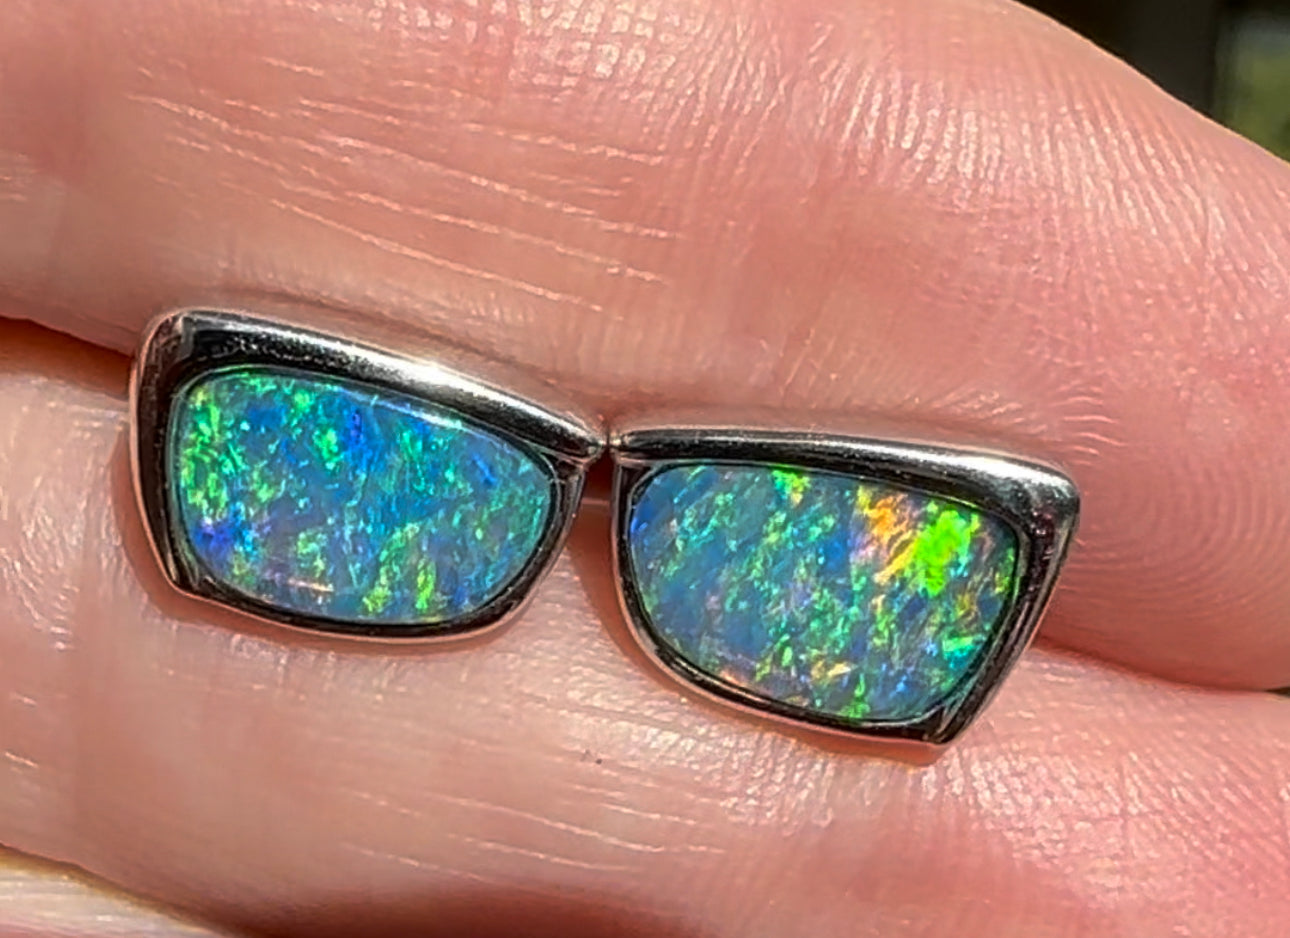 18 k white gold gem opal earrings - Opal Essence Wholesalers 